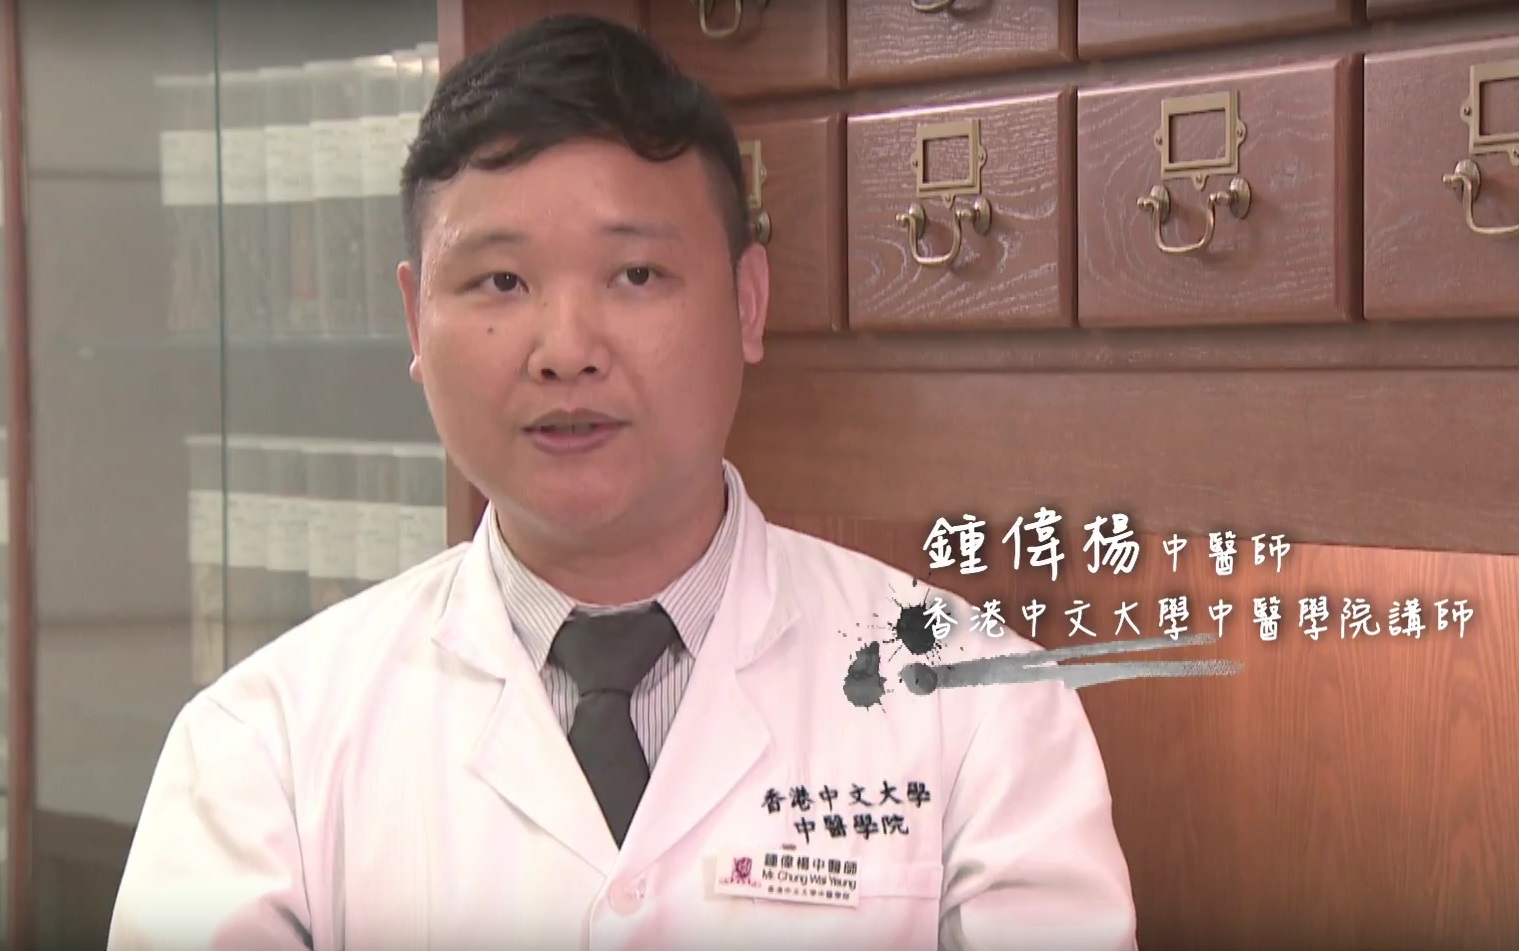 中大中醫學院鍾偉楊醫師會教大家一些穴位按摩方法。